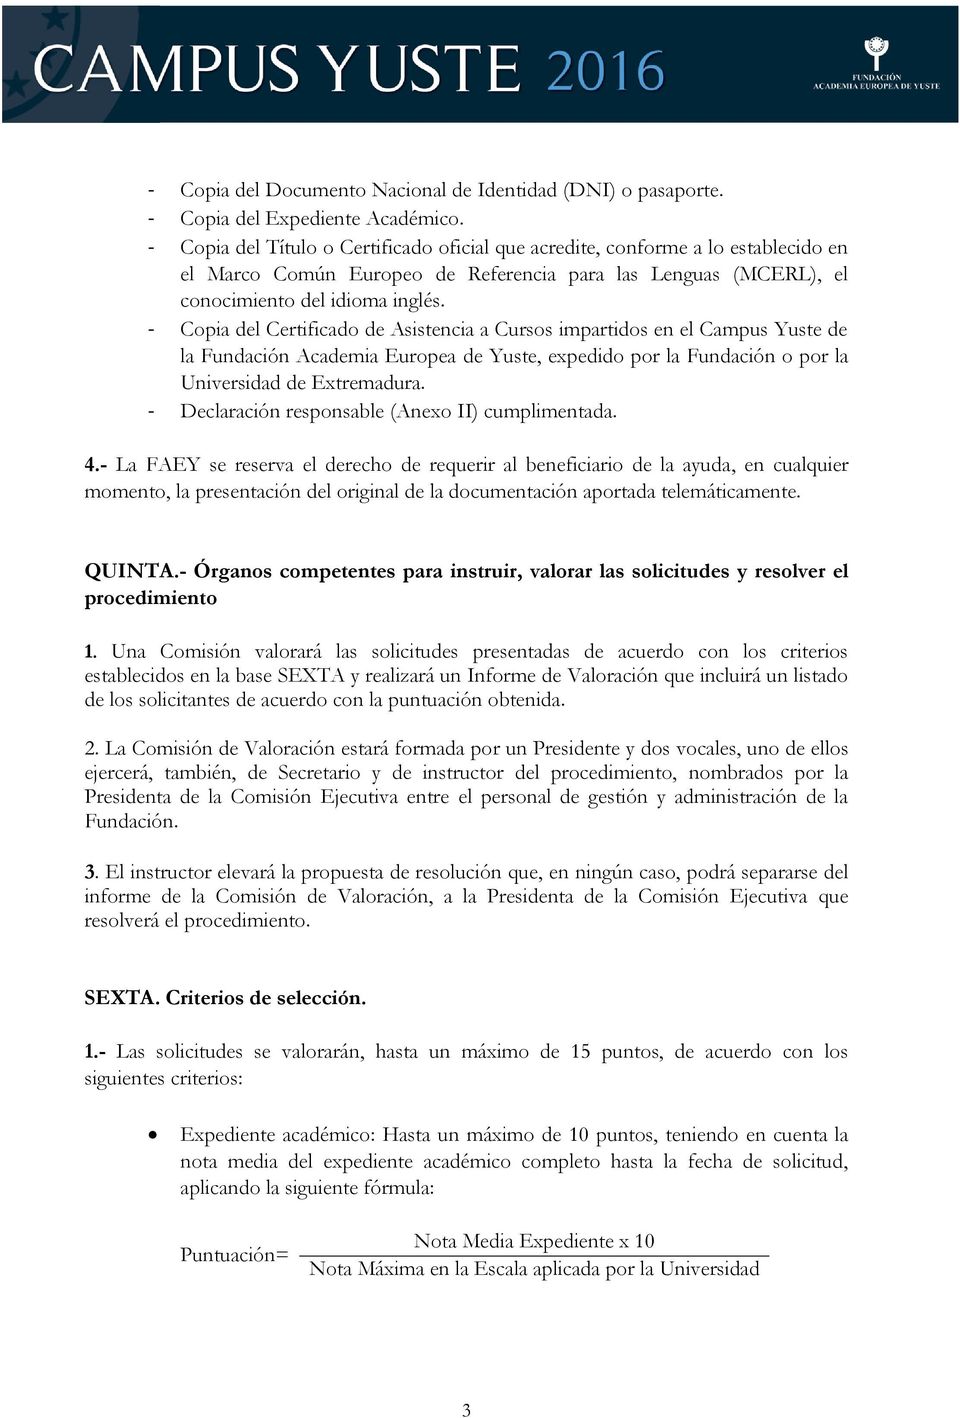 - Copia del Certificado de Asistencia a Cursos impartidos en el Campus Yuste de la Fundación Academia Europea de Yuste, expedido por la Fundación o por la Universidad de Extremadura.